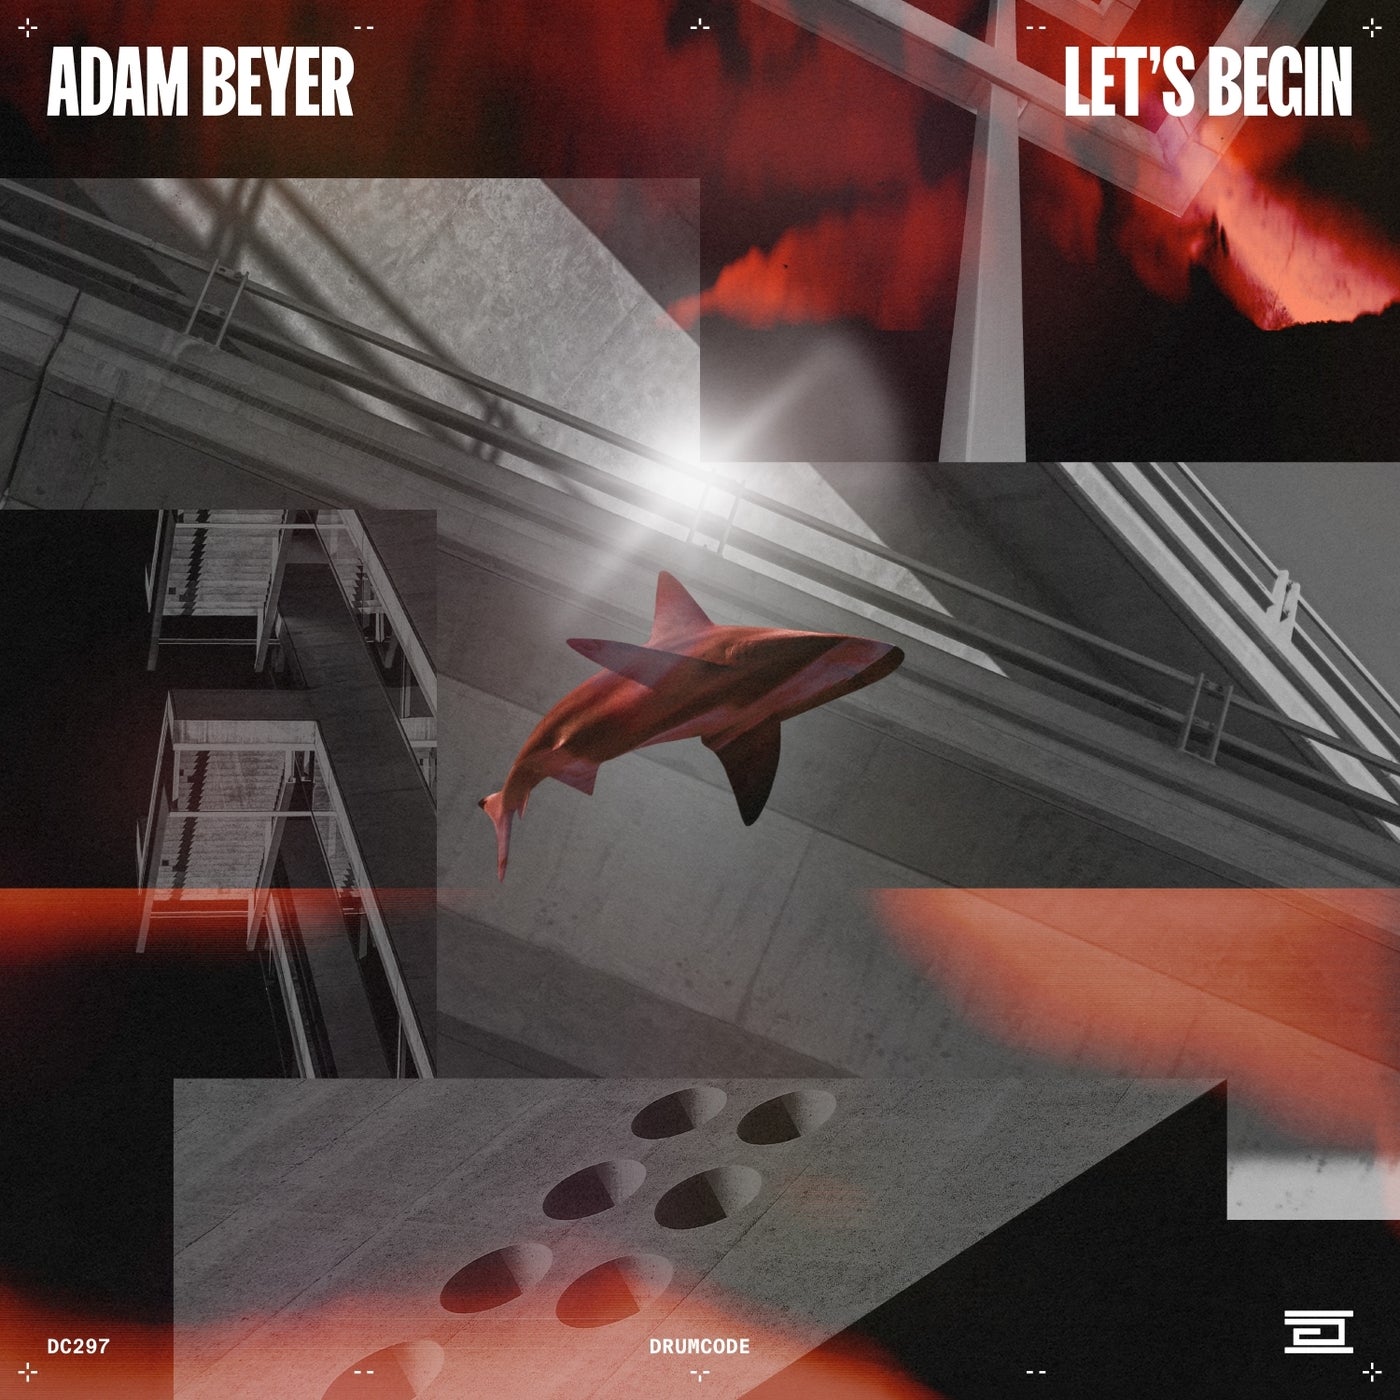 image cover: Adam Beyer - Let's Begin on Drumcode